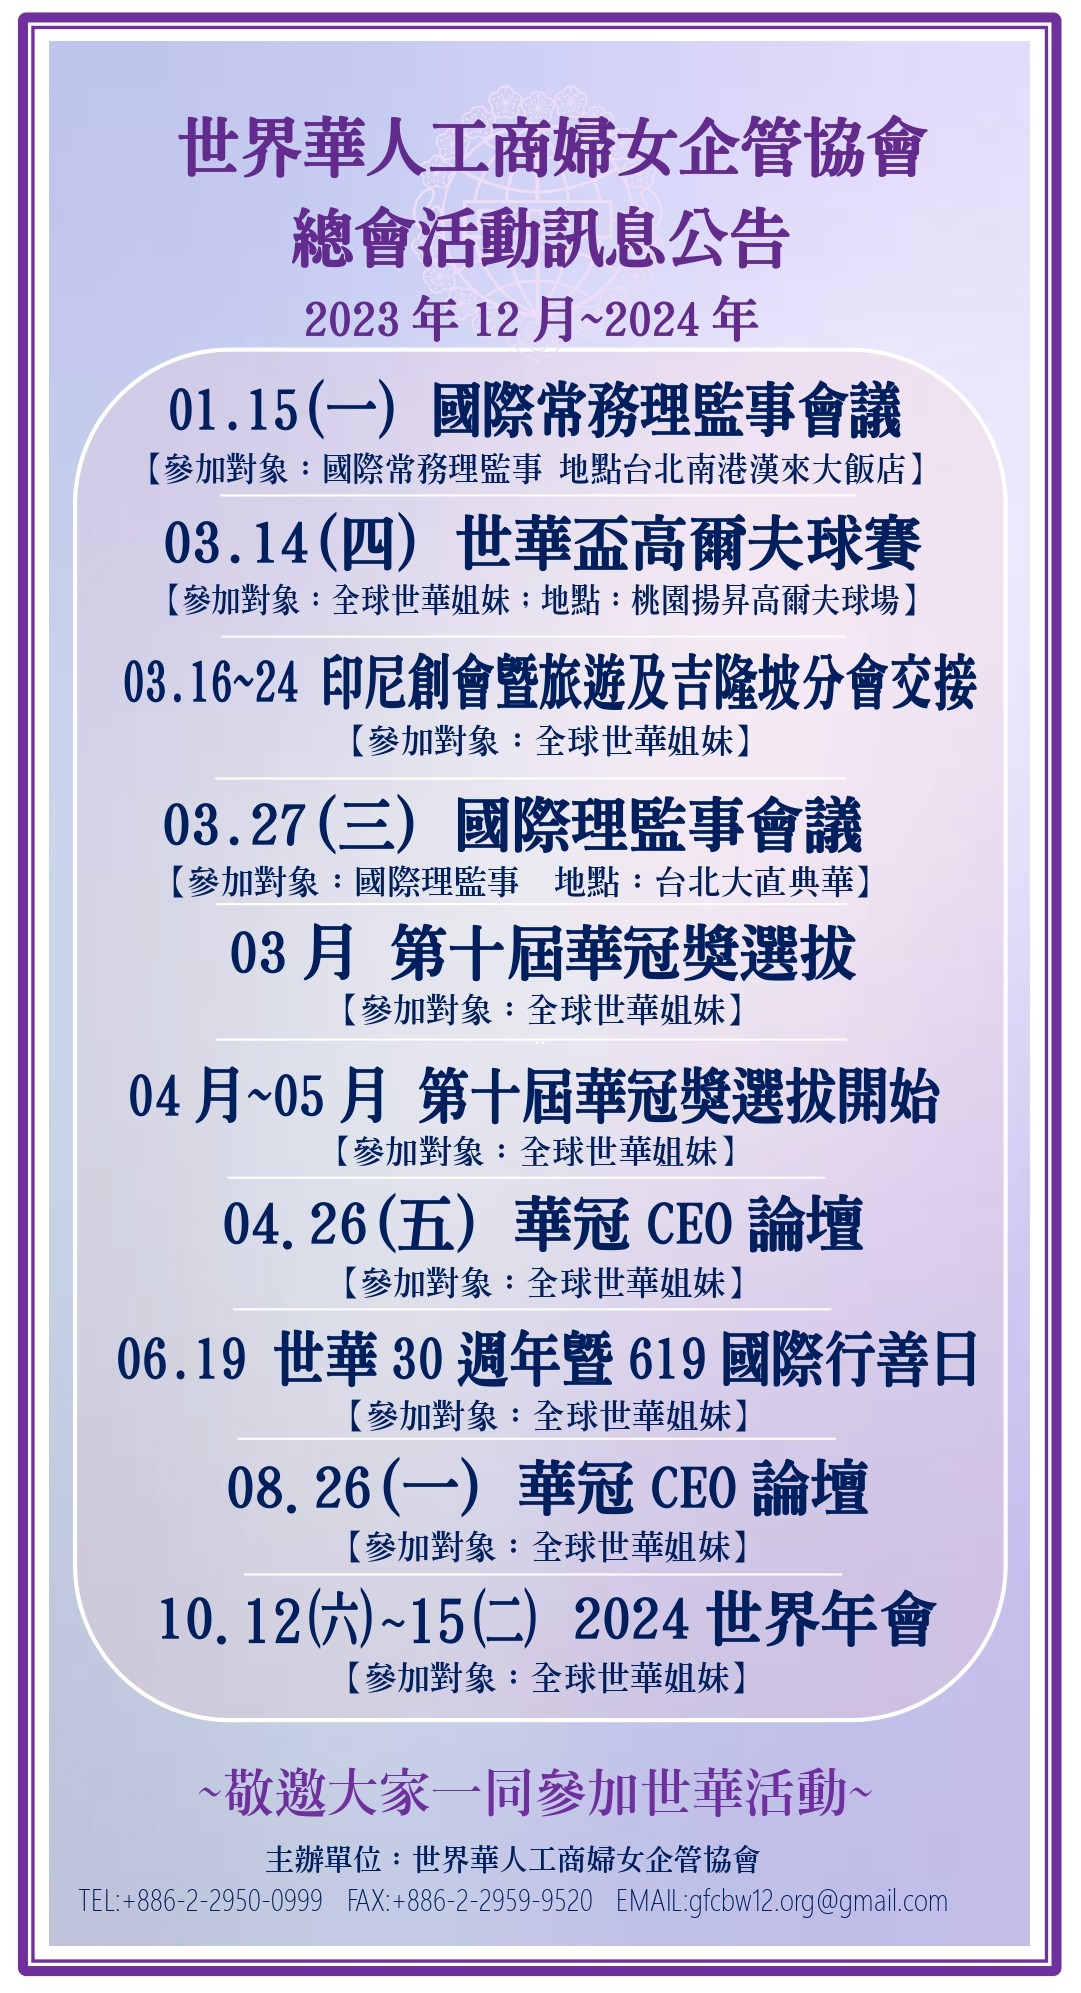 世界華人工商婦女企管協會總會活動訊息公告(2023.12)